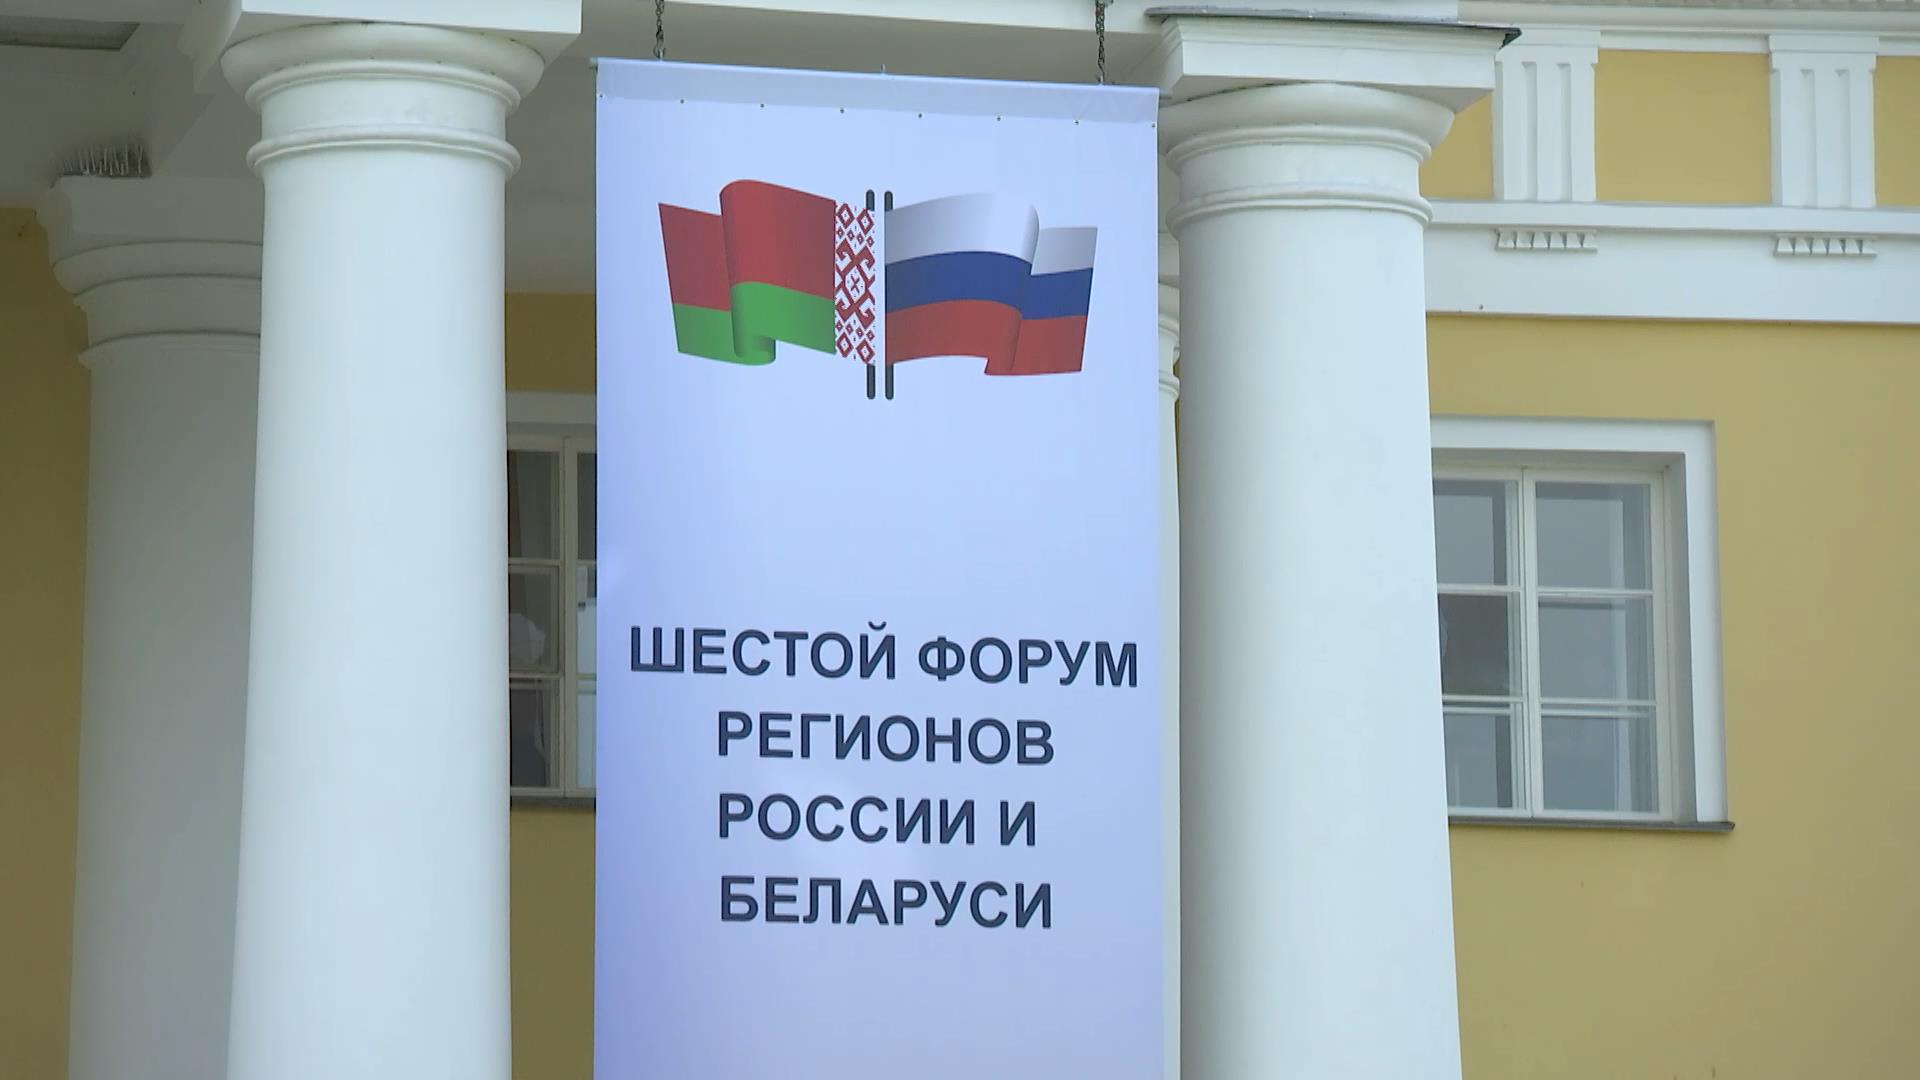 Форум регионов Беларуси и России 2019 открывается сегодня в Санкт-Петербурге